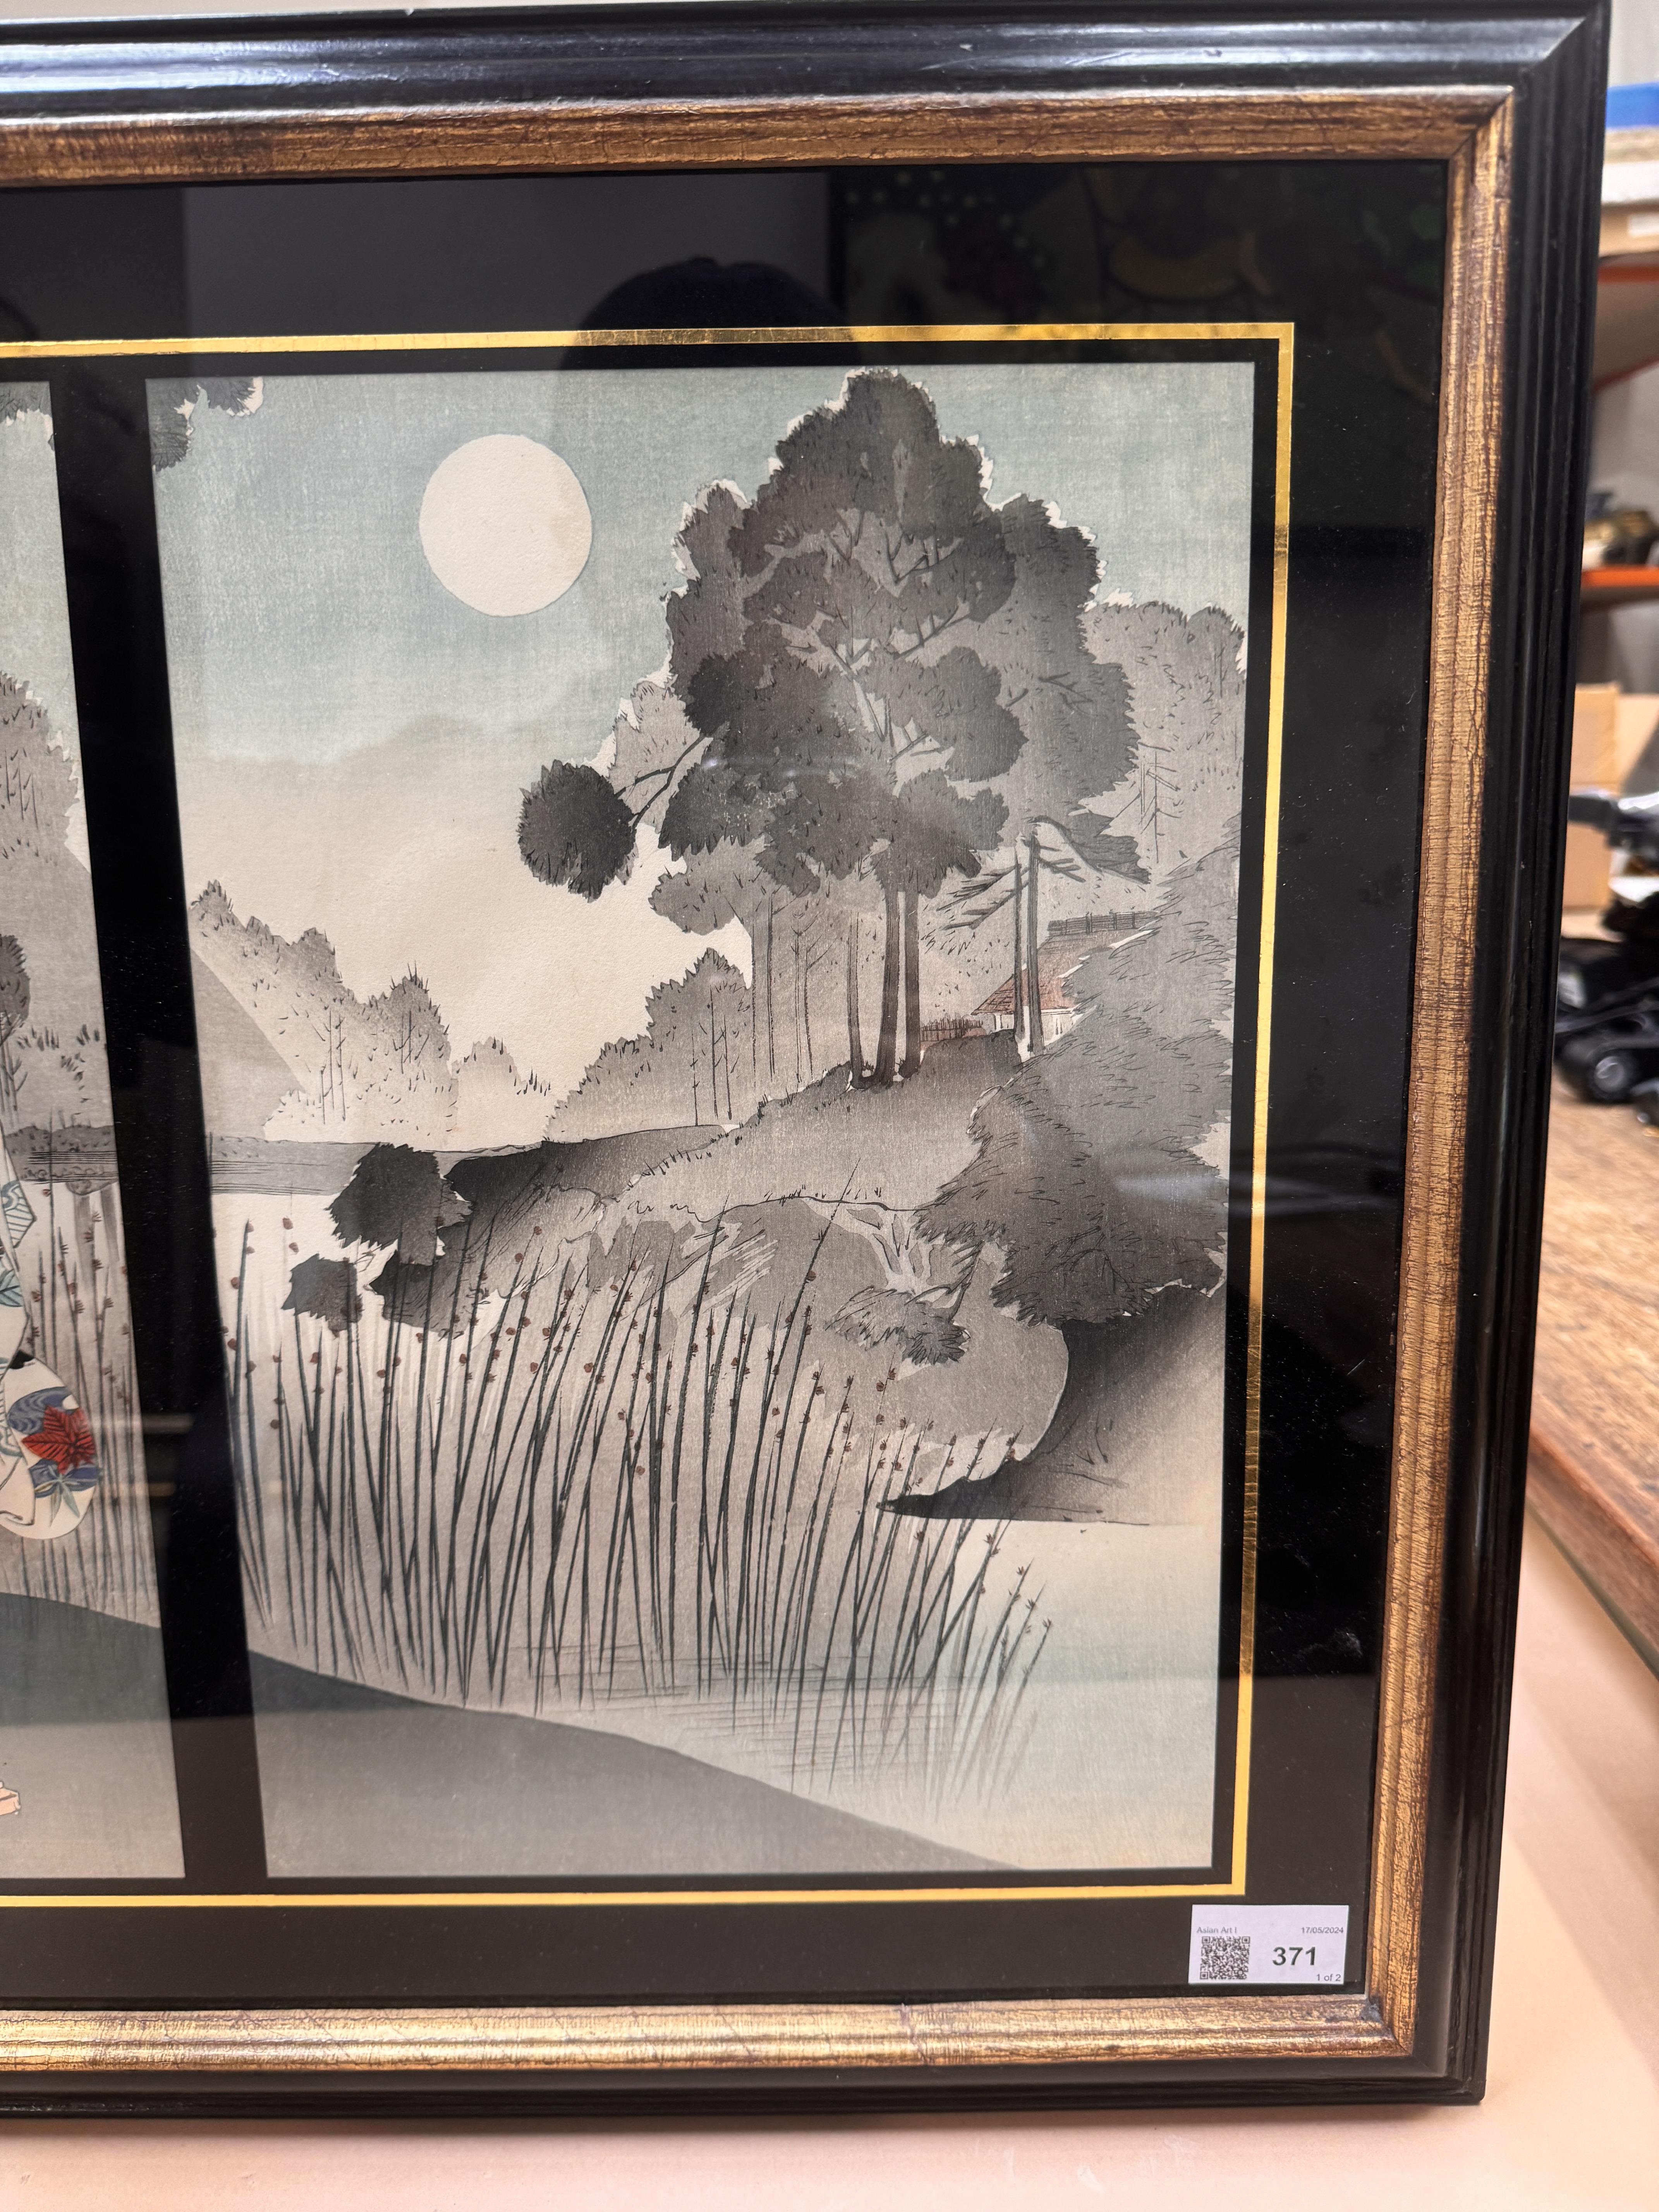 TSUKIOKA YOSHITOSHI (1797 – 1858), MIYAGAWA SHUNTEI (1873 – 1914) Two Japanese woodblock print tript - Image 10 of 23